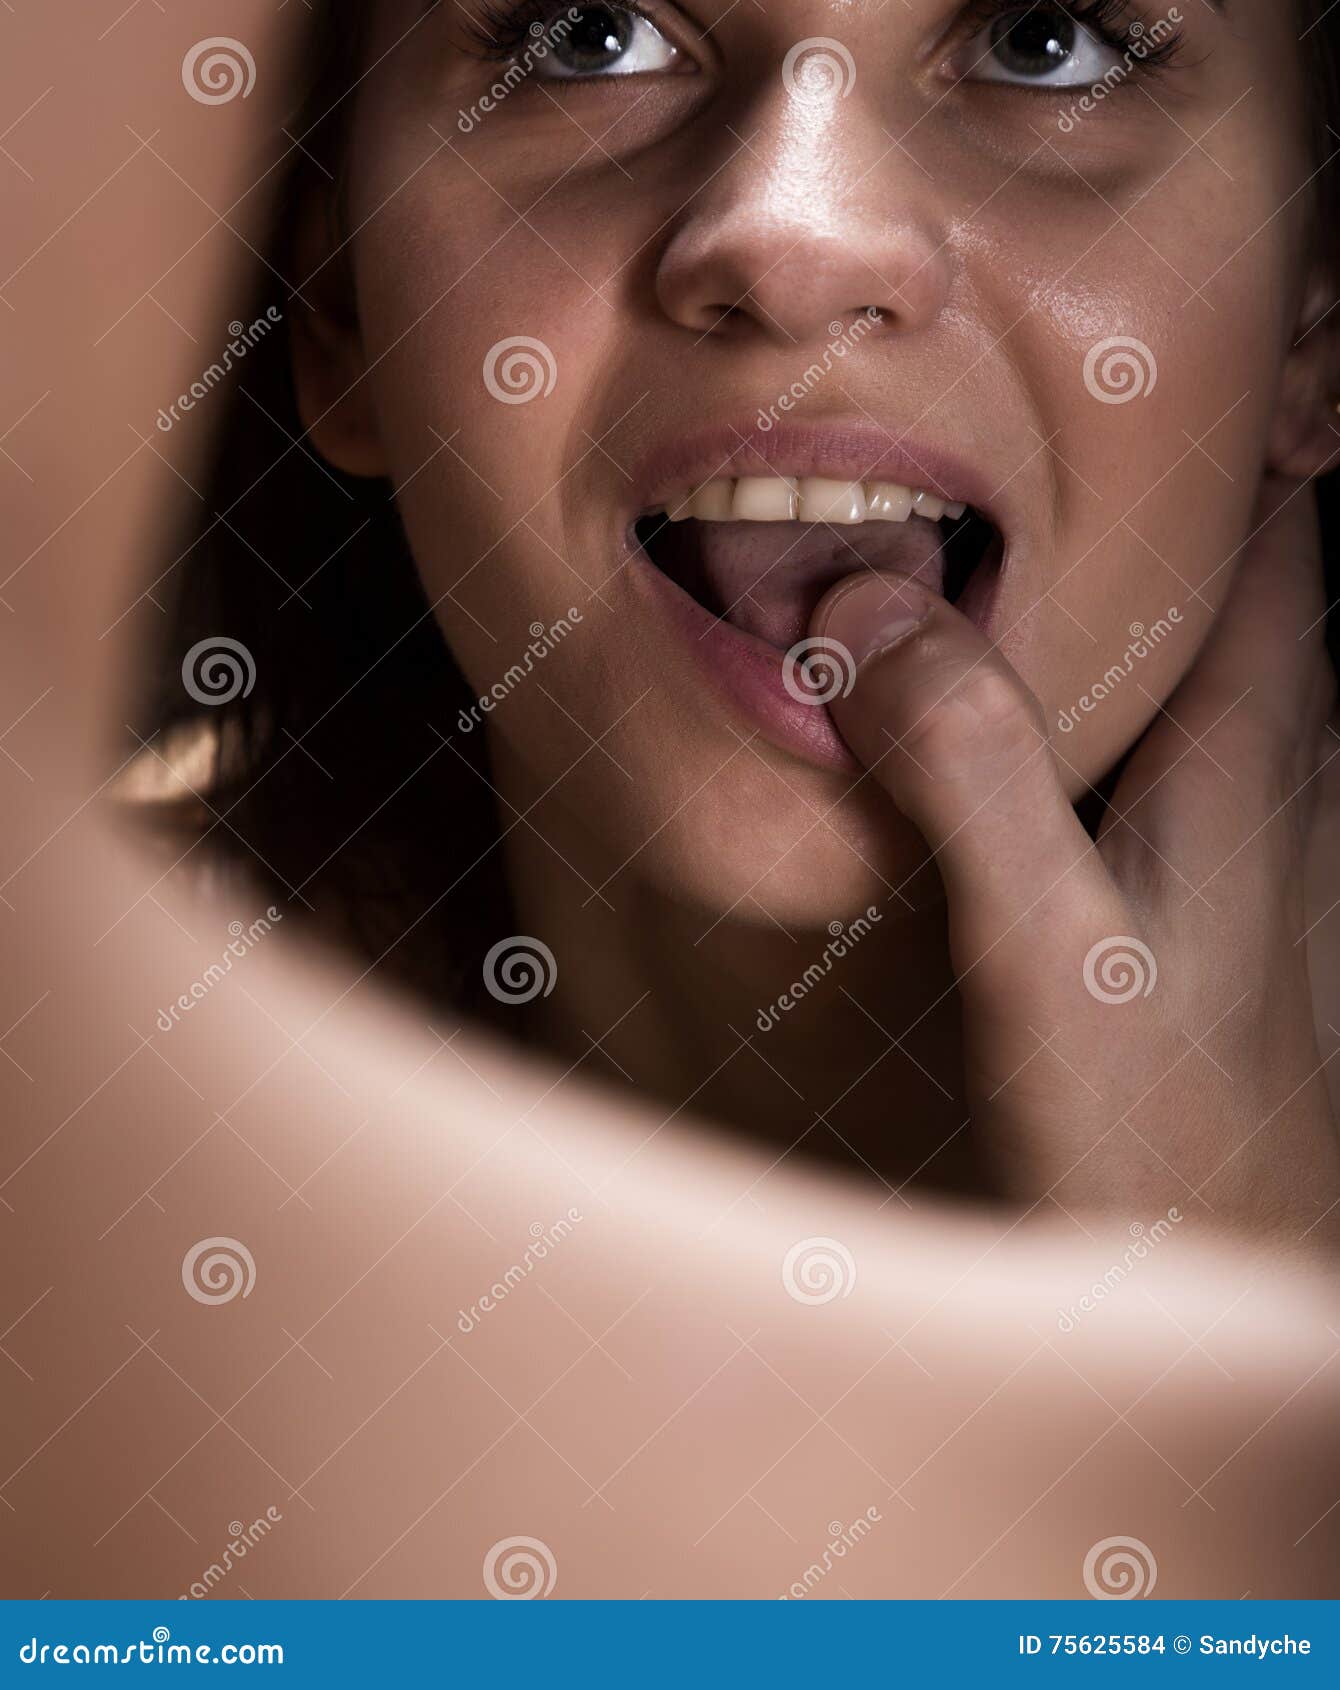 Жена руками и ртом. Палец во рту у девушки. Большой палец во рту. Женщина с пальцем у рта.